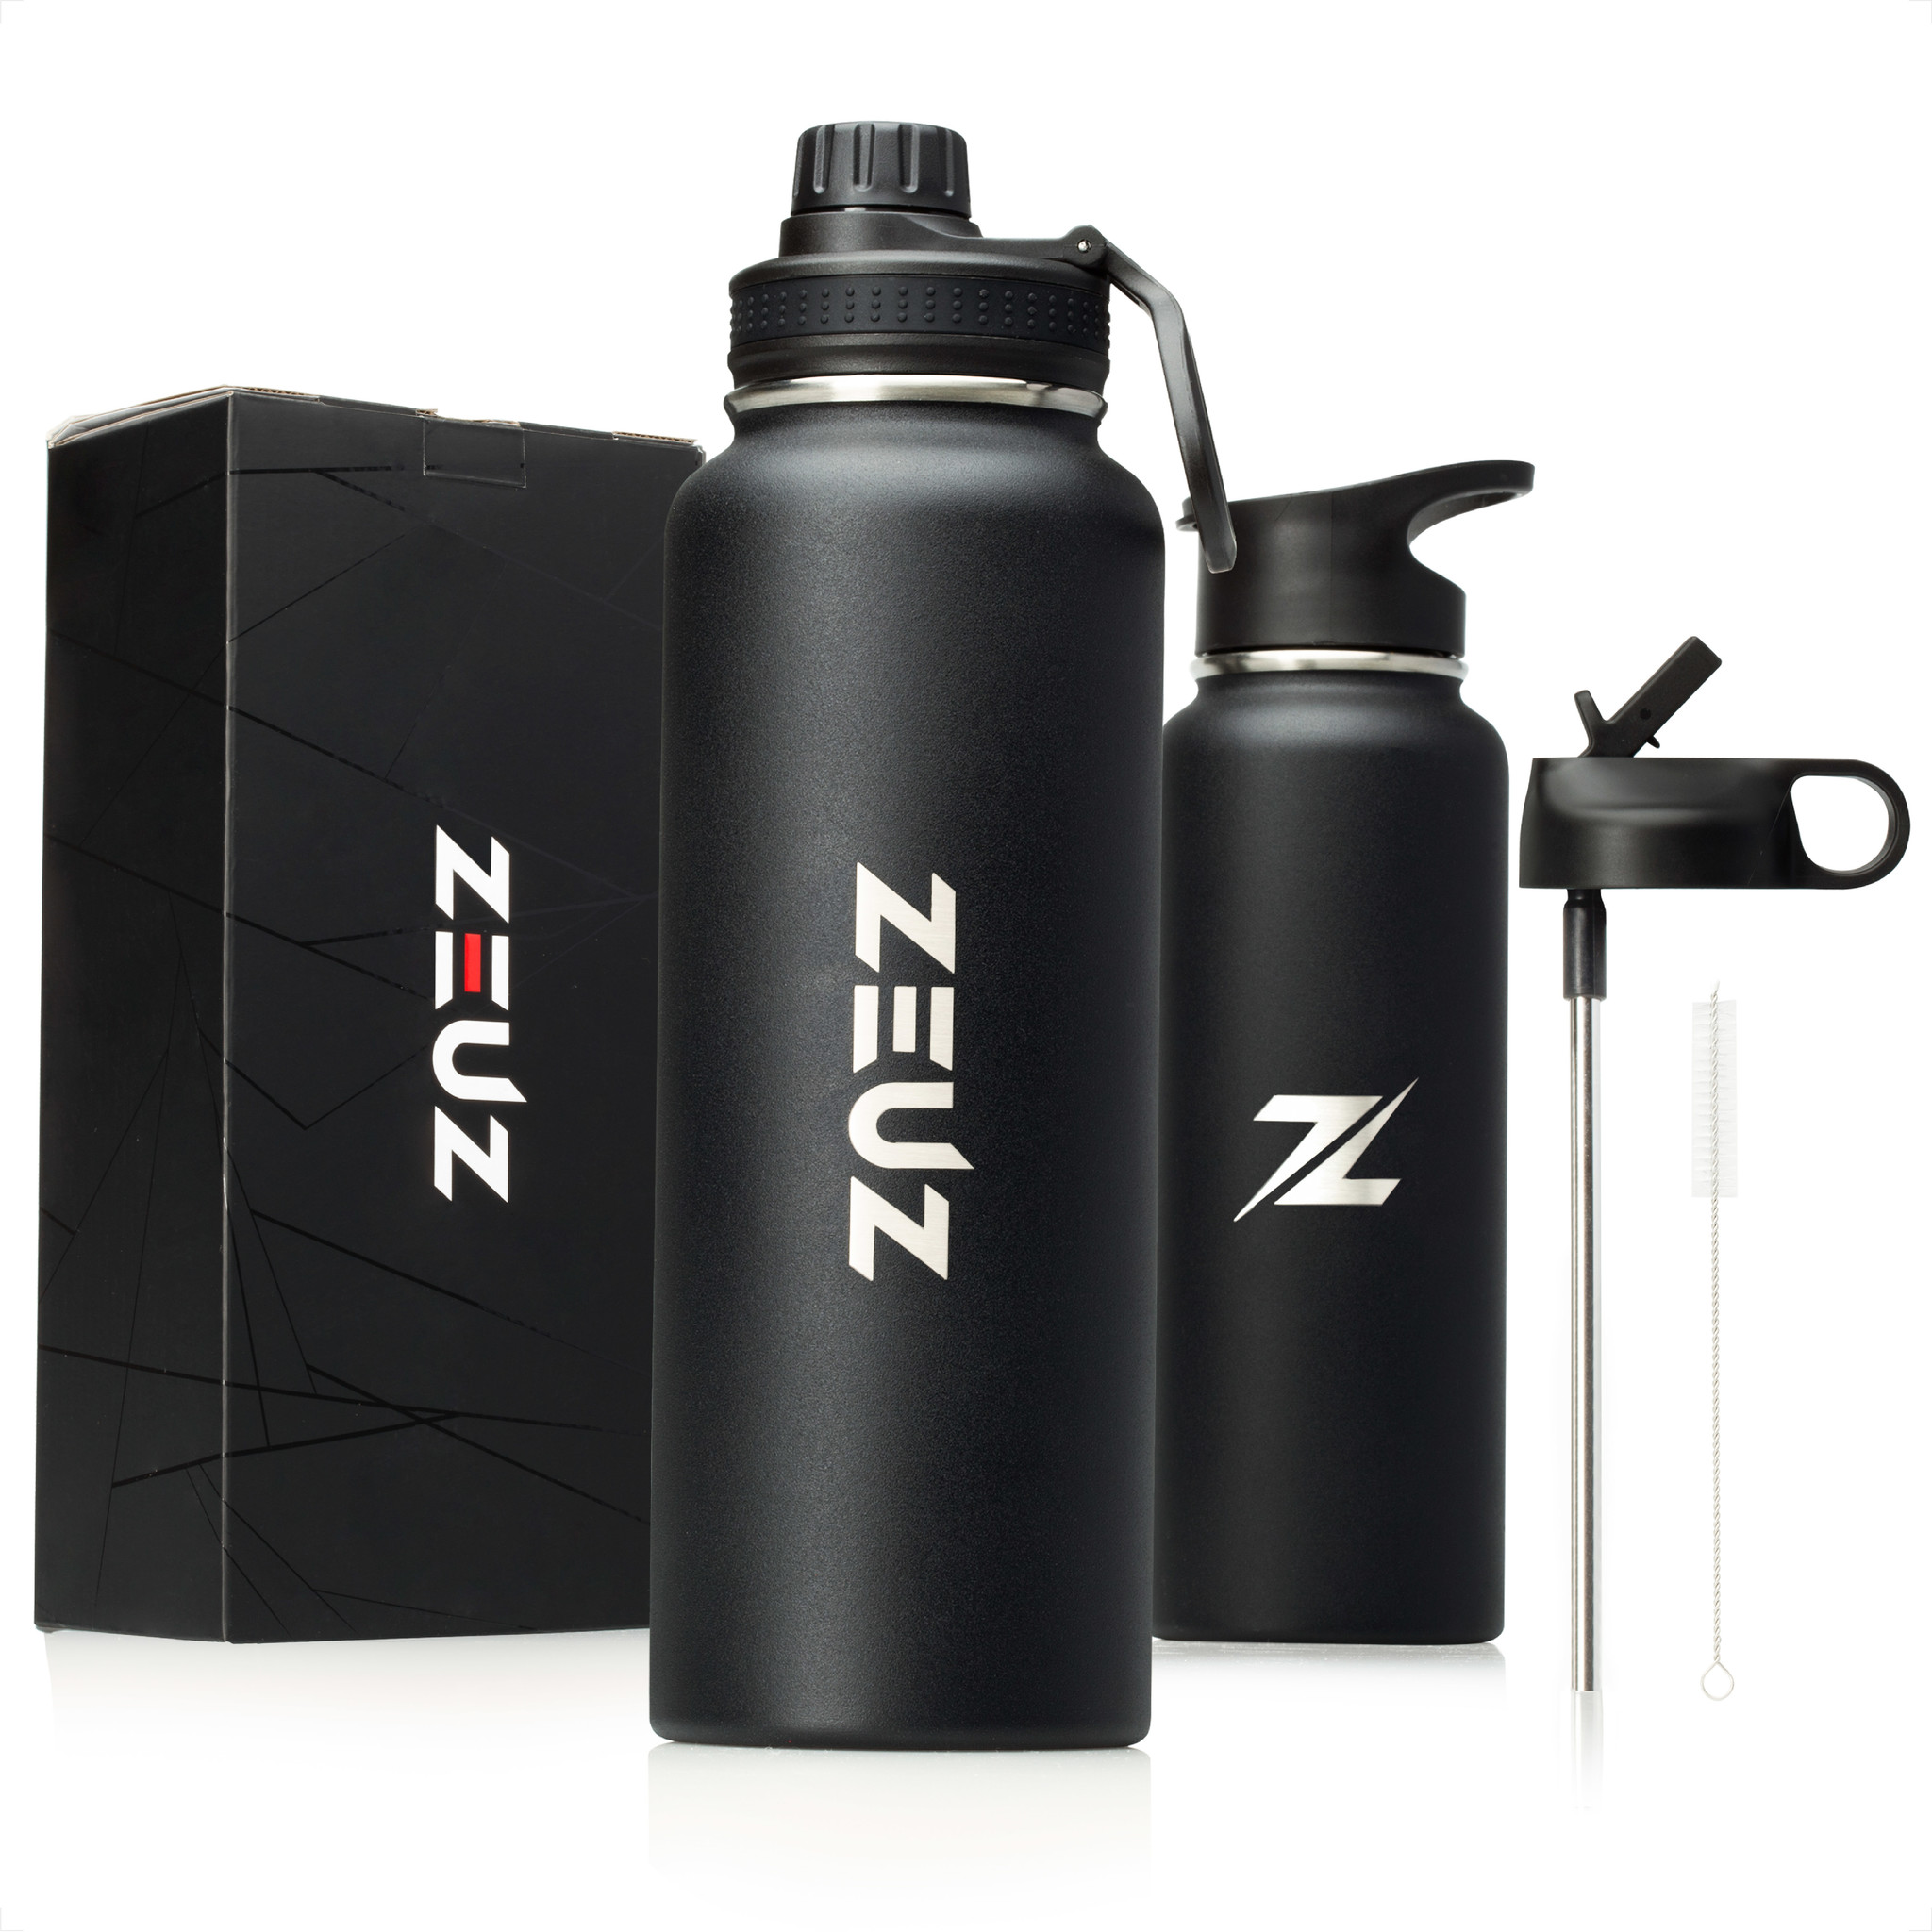 de wind is sterk Entertainment Doe voorzichtig ZEUZ® Premium RVS Thermosfles & Drinkfles - 1200 ml/ 1, 2 Liter- Mat Zwart  - ZEUZ